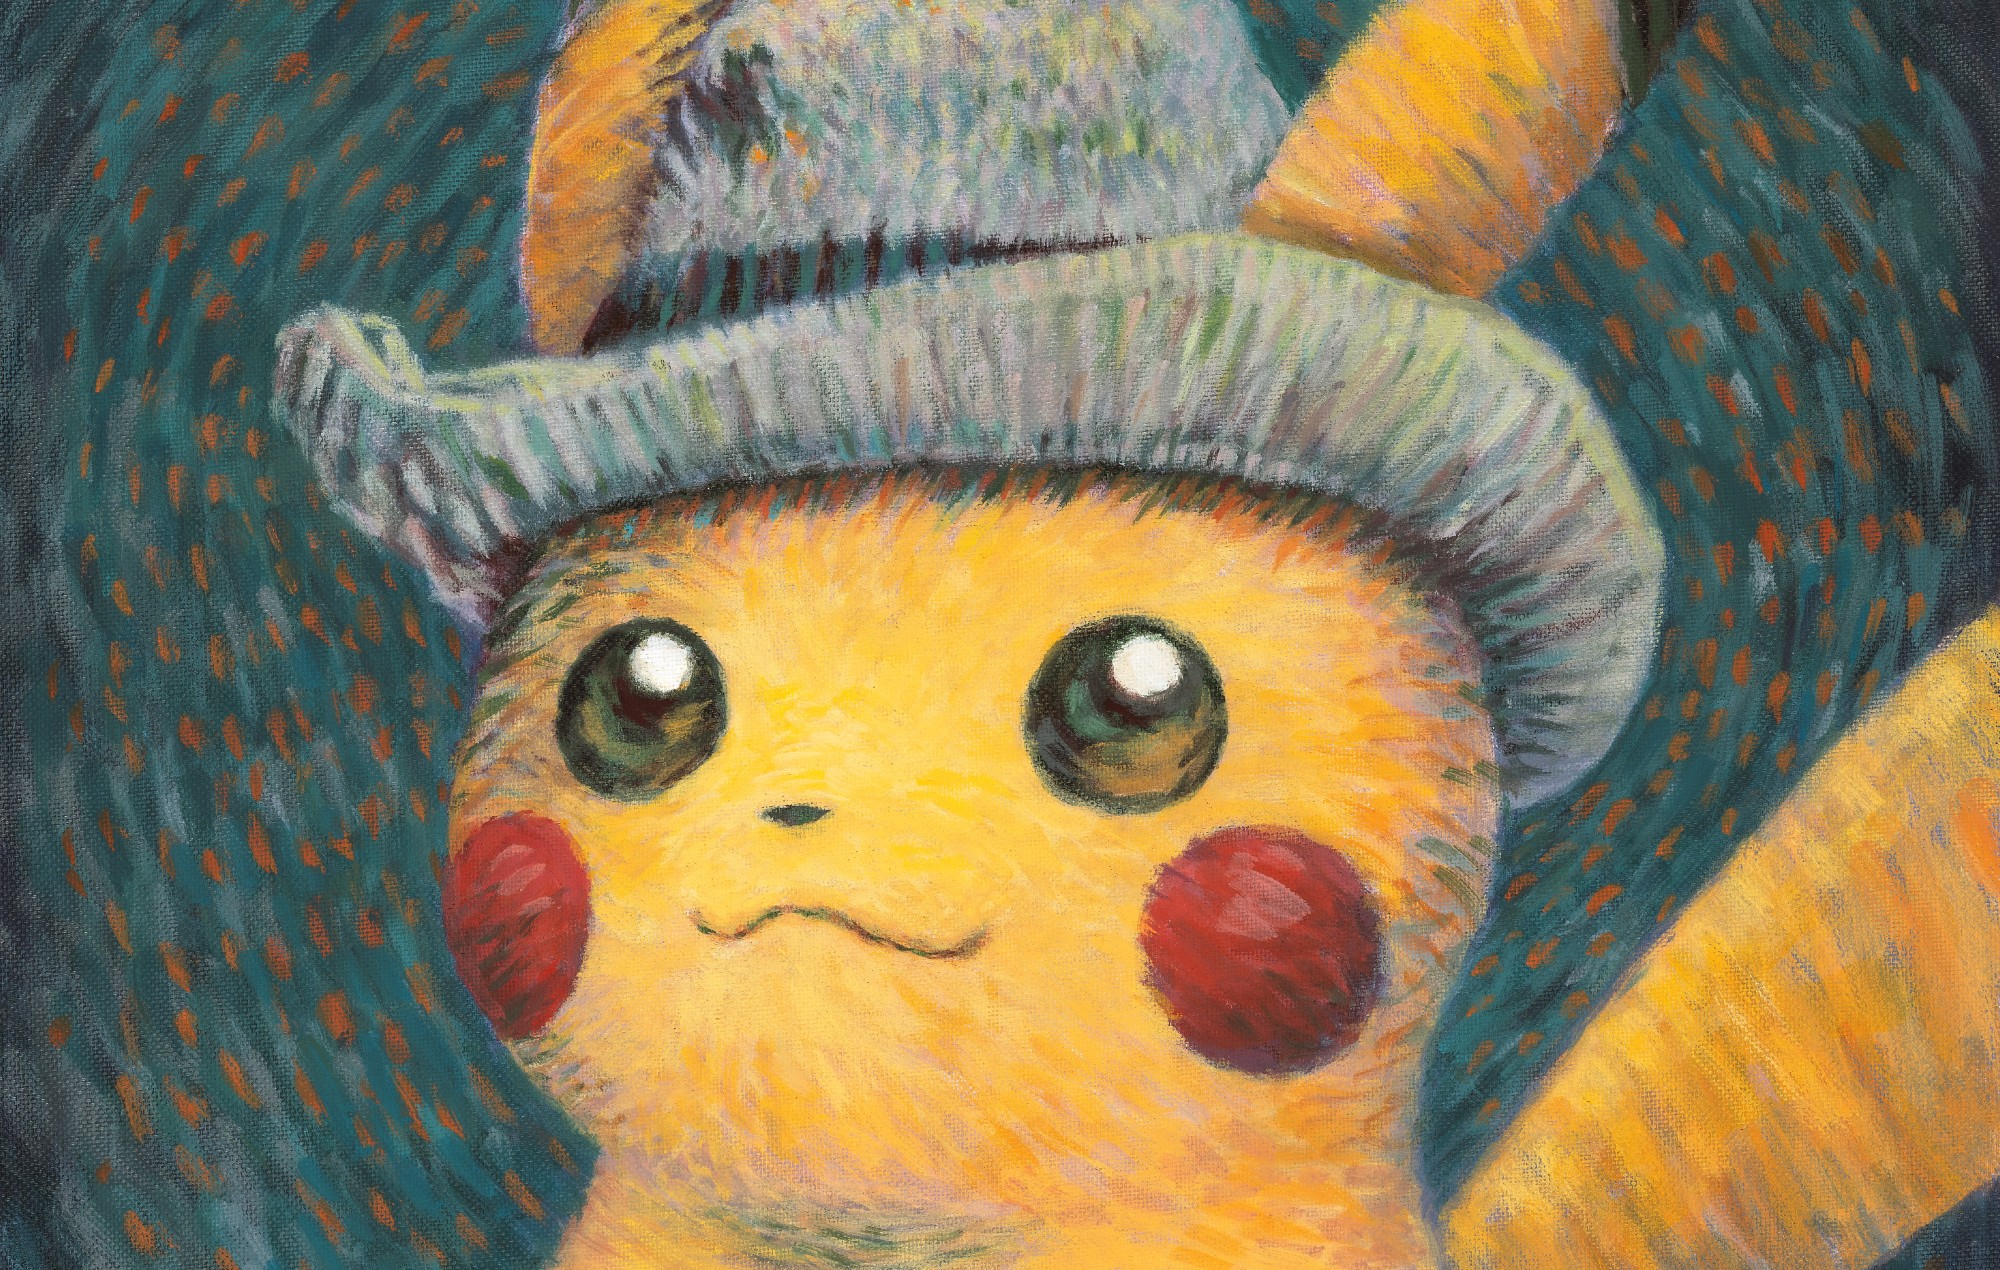 La tarjeta Pokémon Pikachu de Van Gogh, retirada del museo por motivos de "seguridad